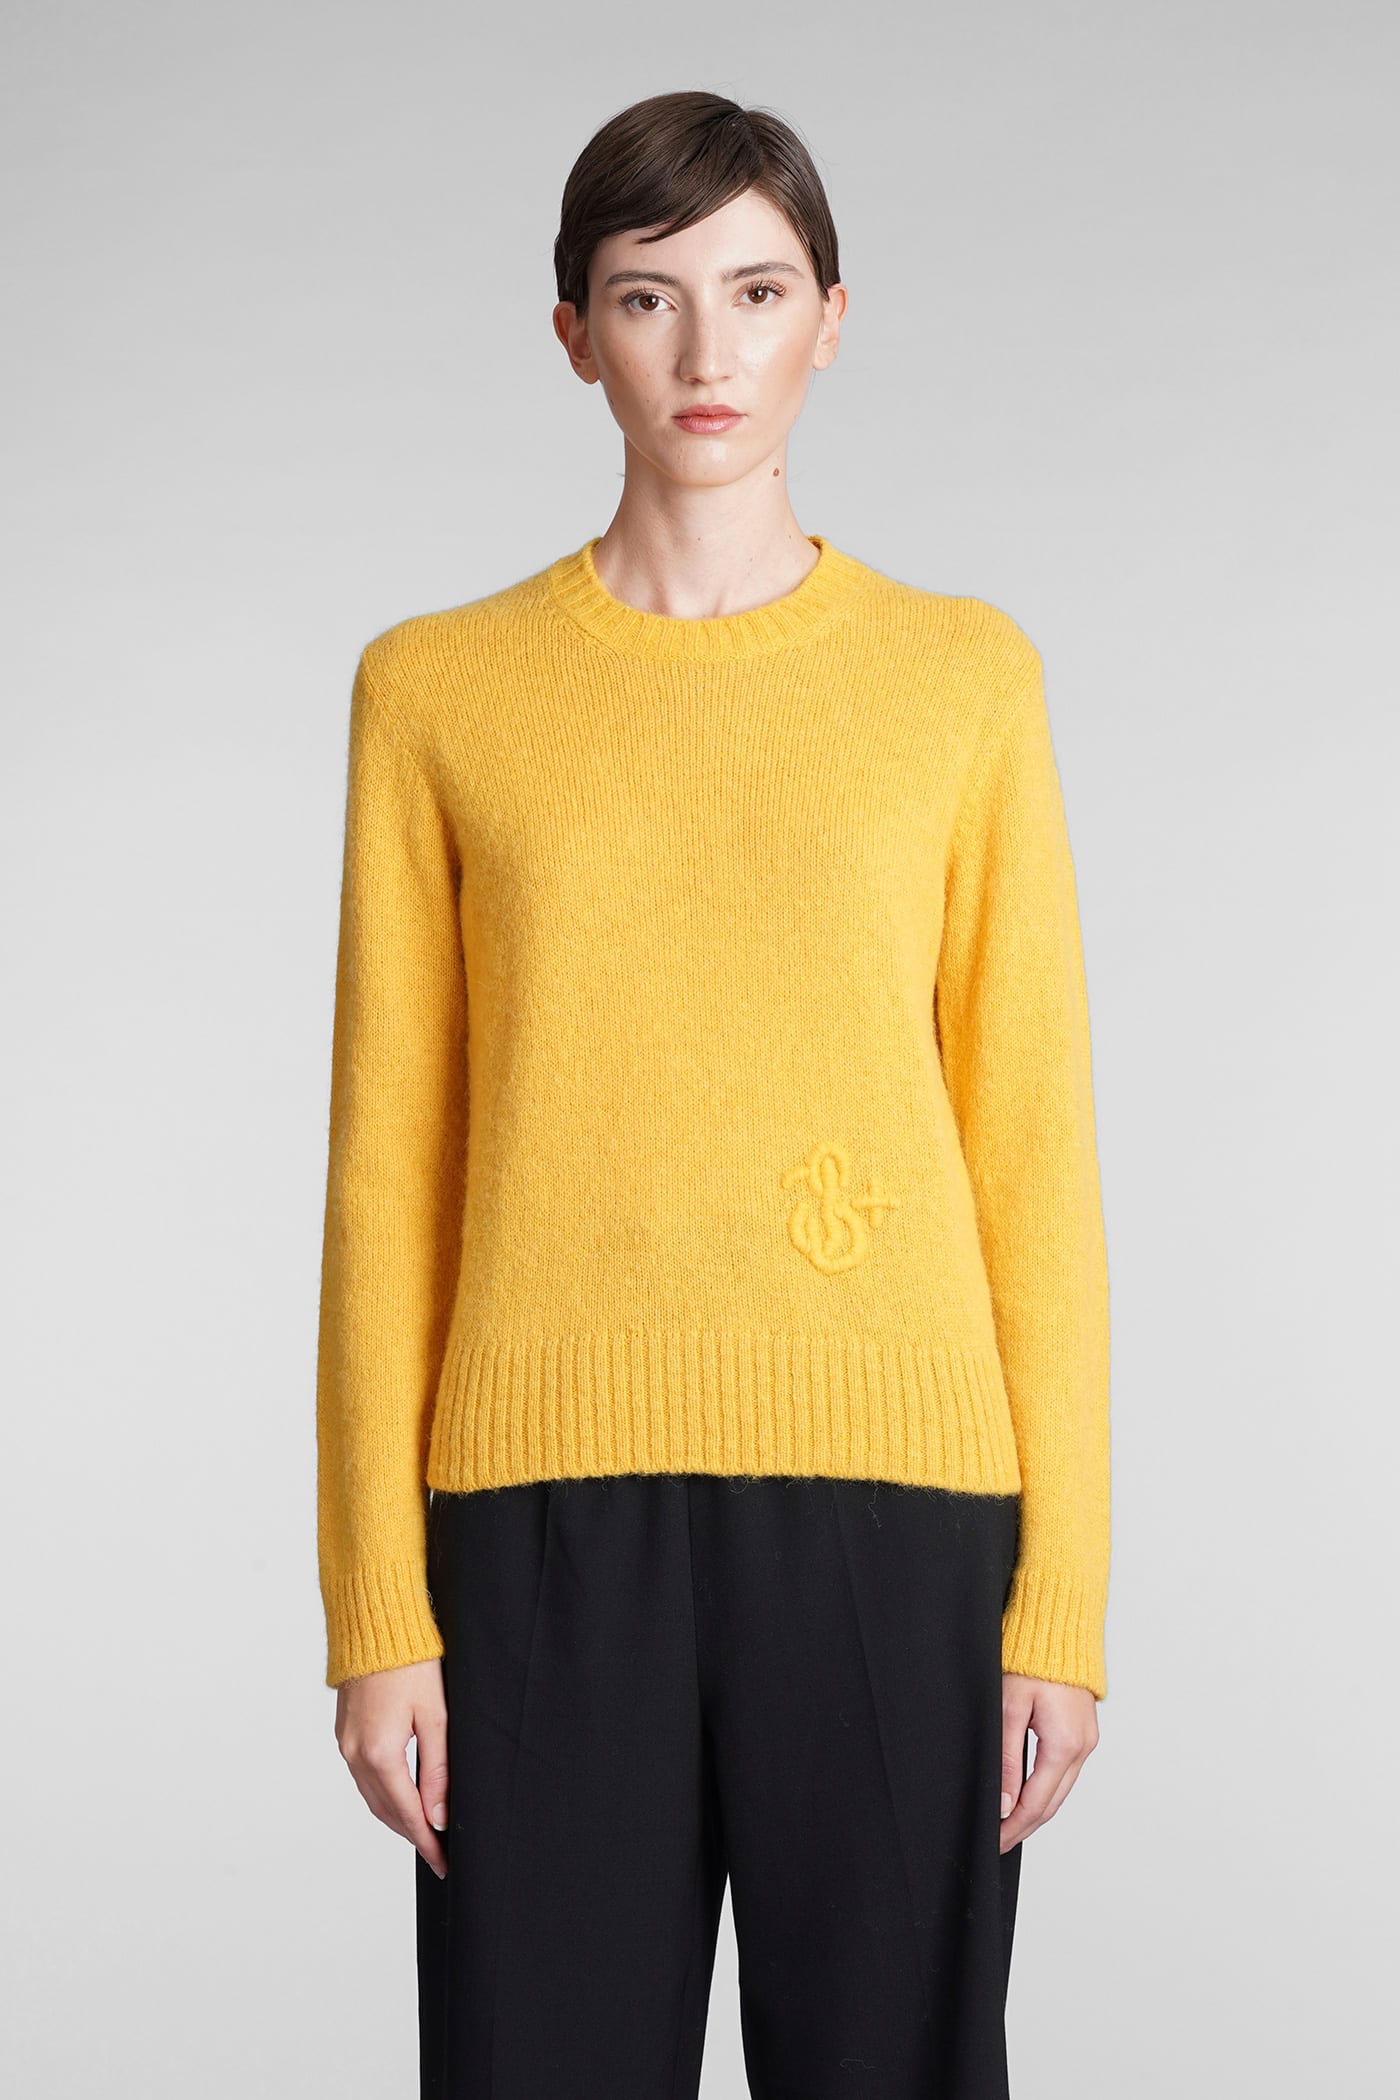 Jil Sander Knitwear In Yellow Wool